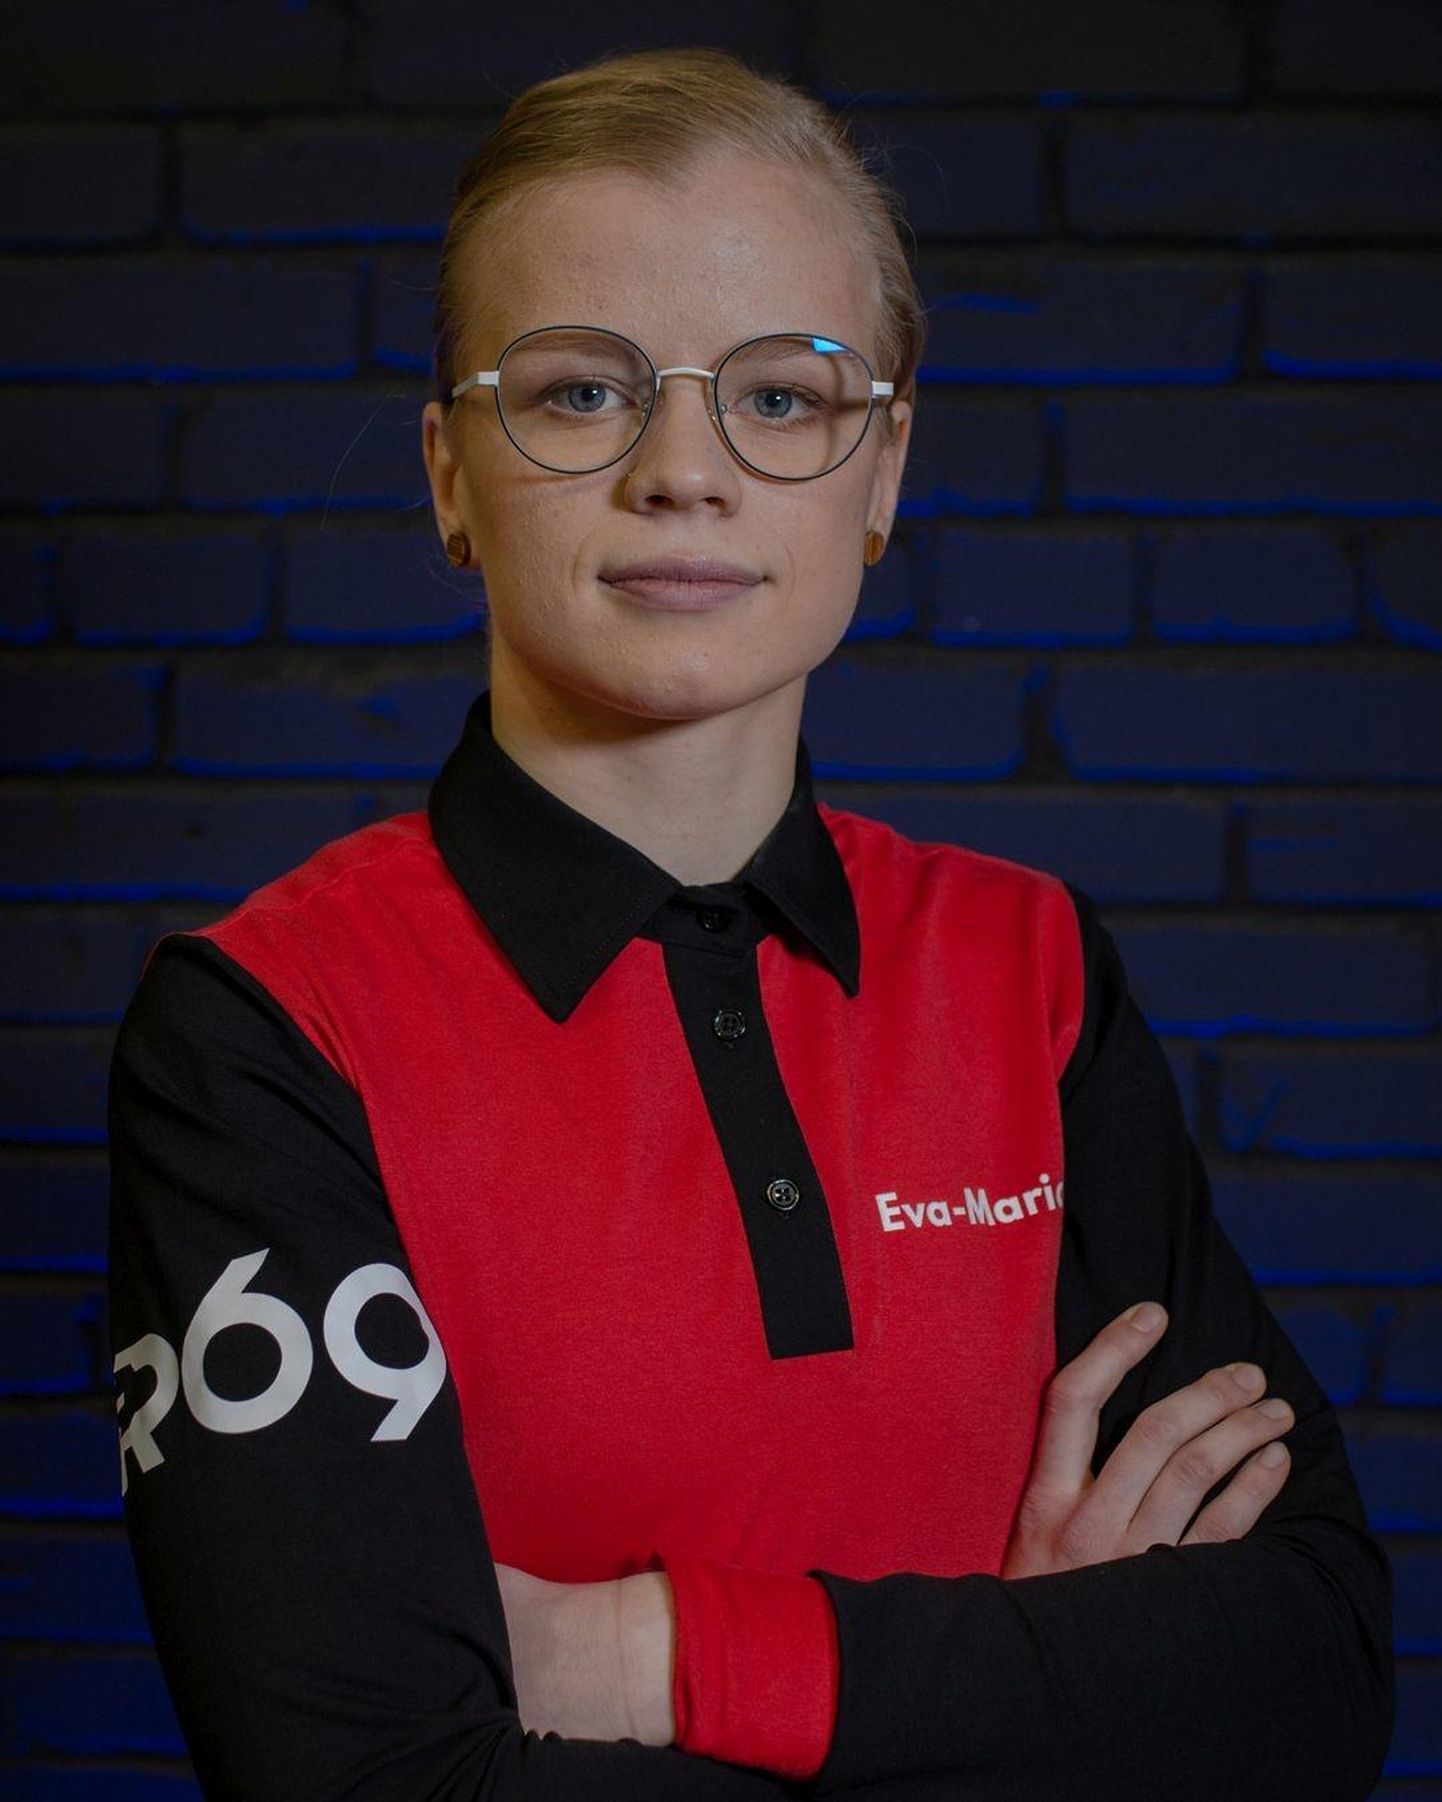 Põhikooli lõpuklassis õppiv Eva-Maria Raudsepp on tänavuse “Rakett 69” kõige noorem võistleja.